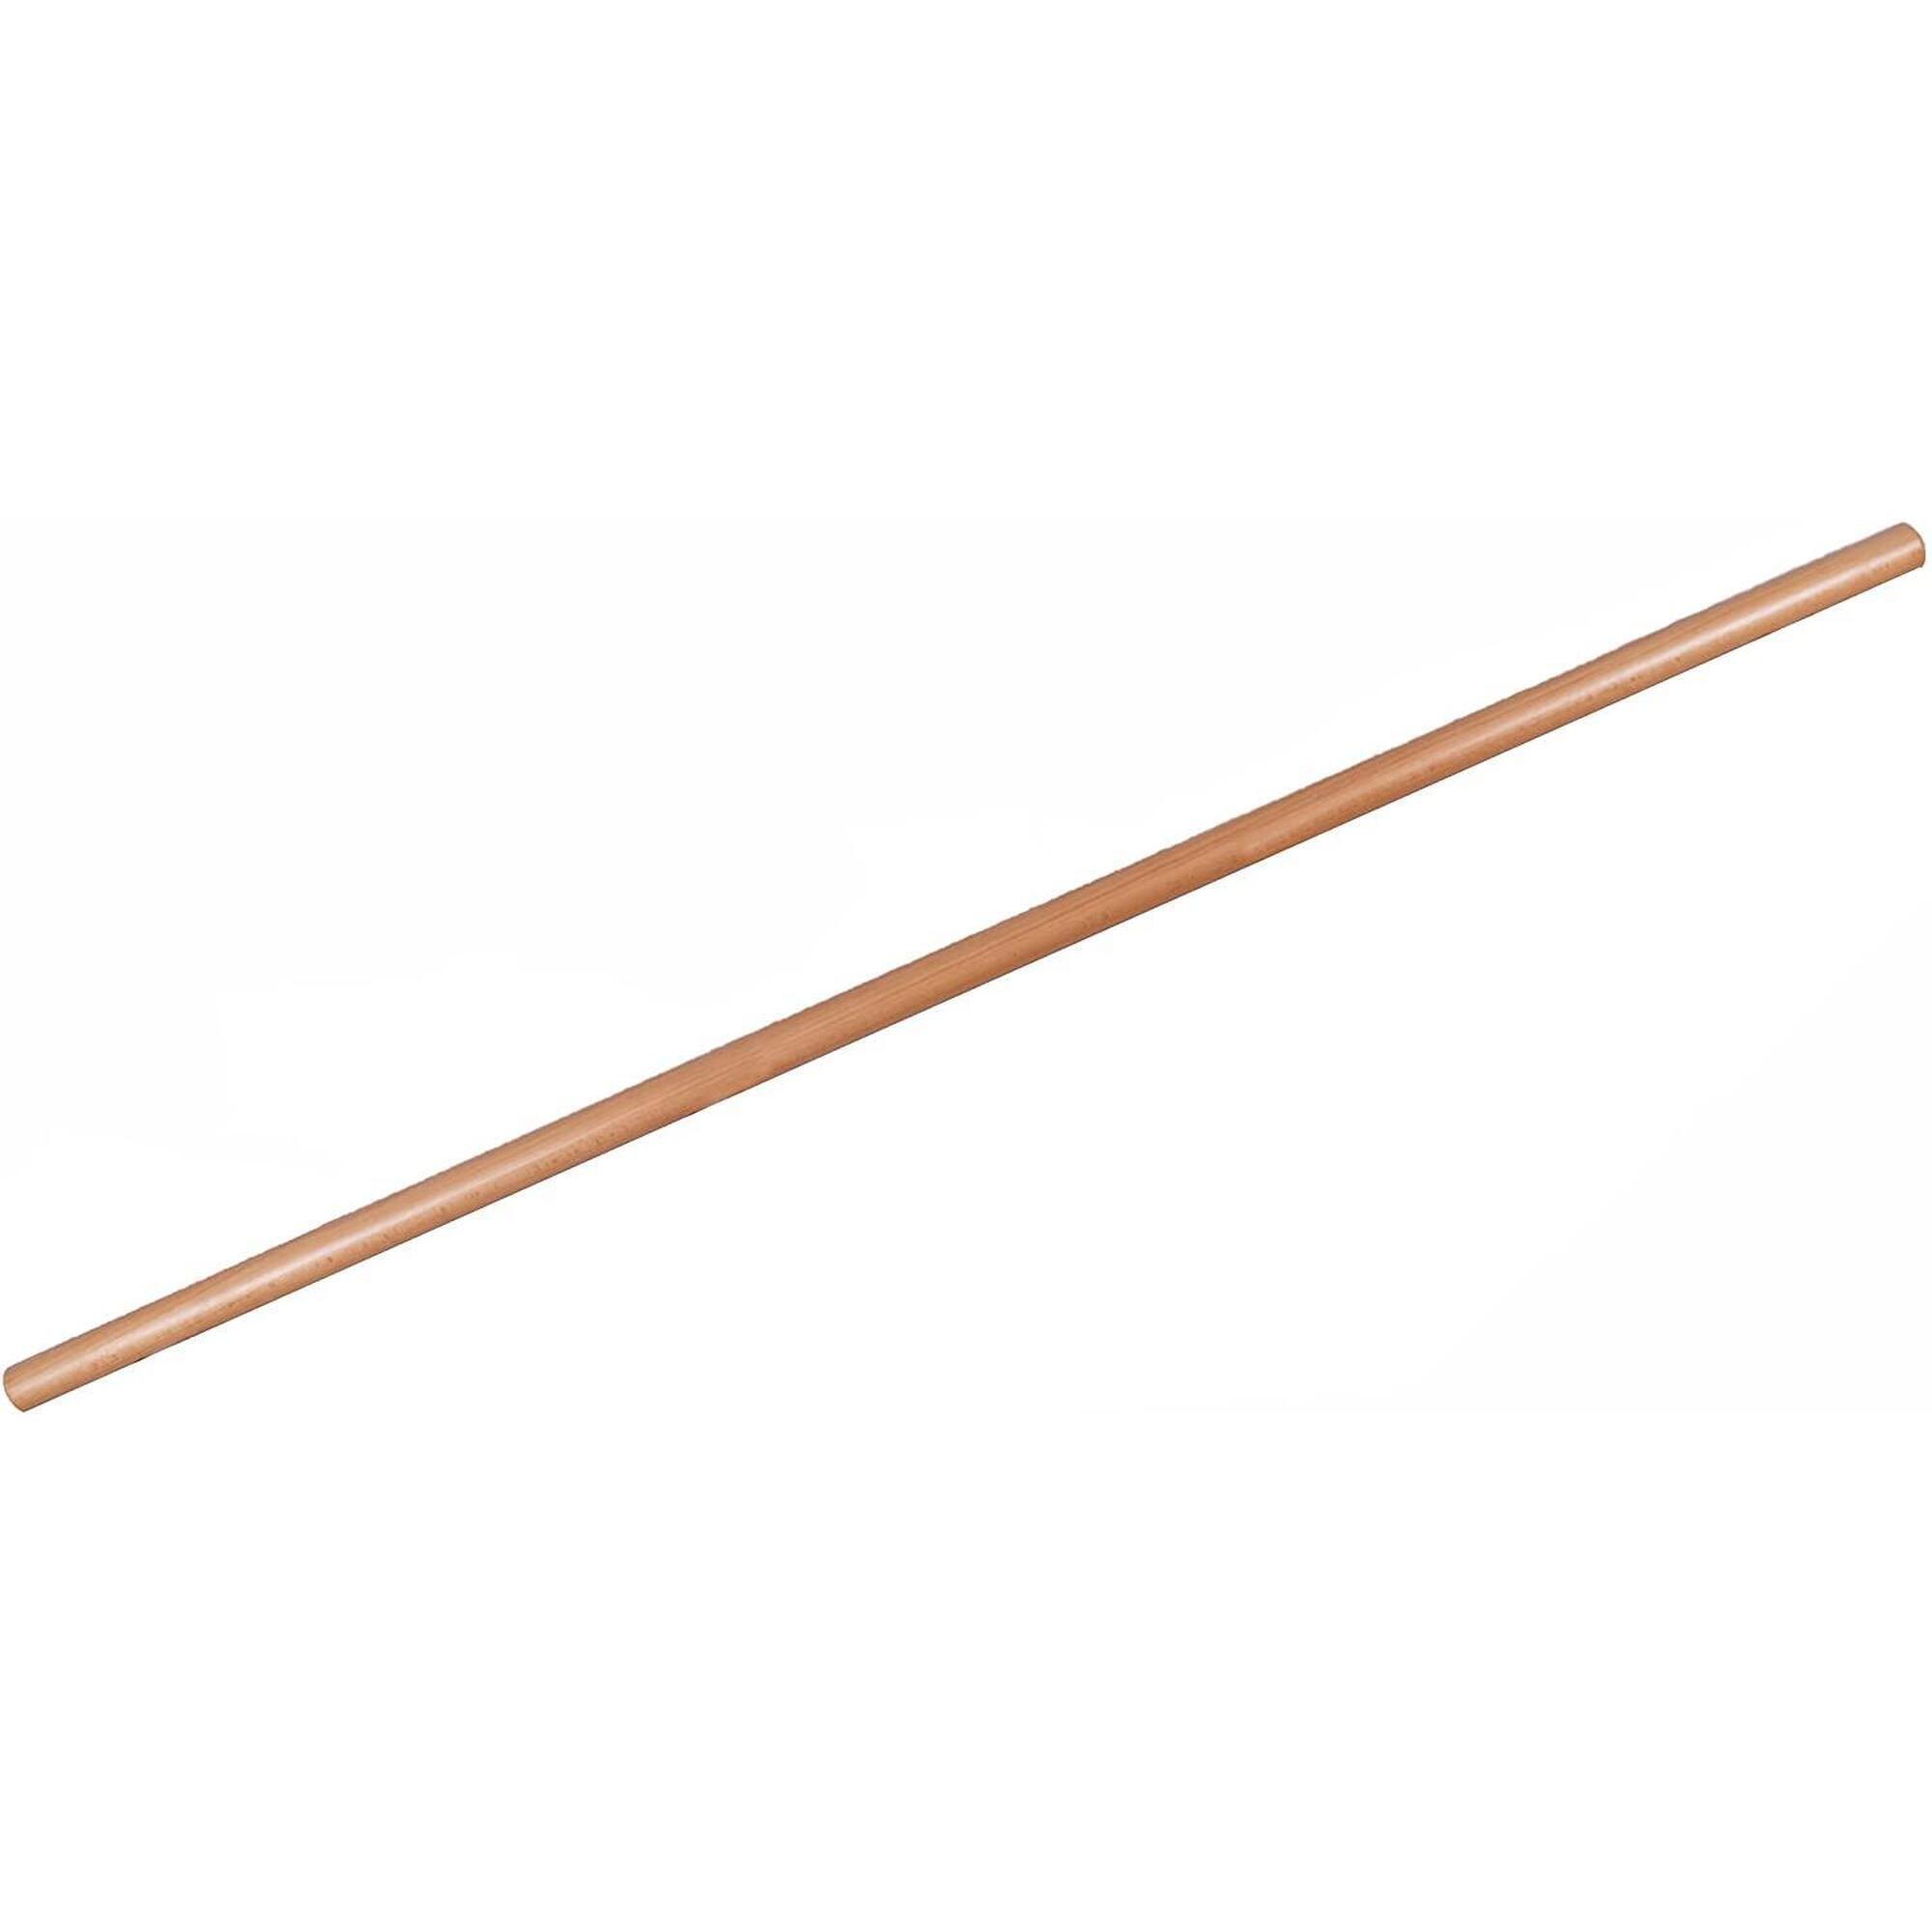 Балетный брус из бука, диаметр 40 мм, двойной лак. BALLETTSTANGEN MANUFAKTUR, коричневый